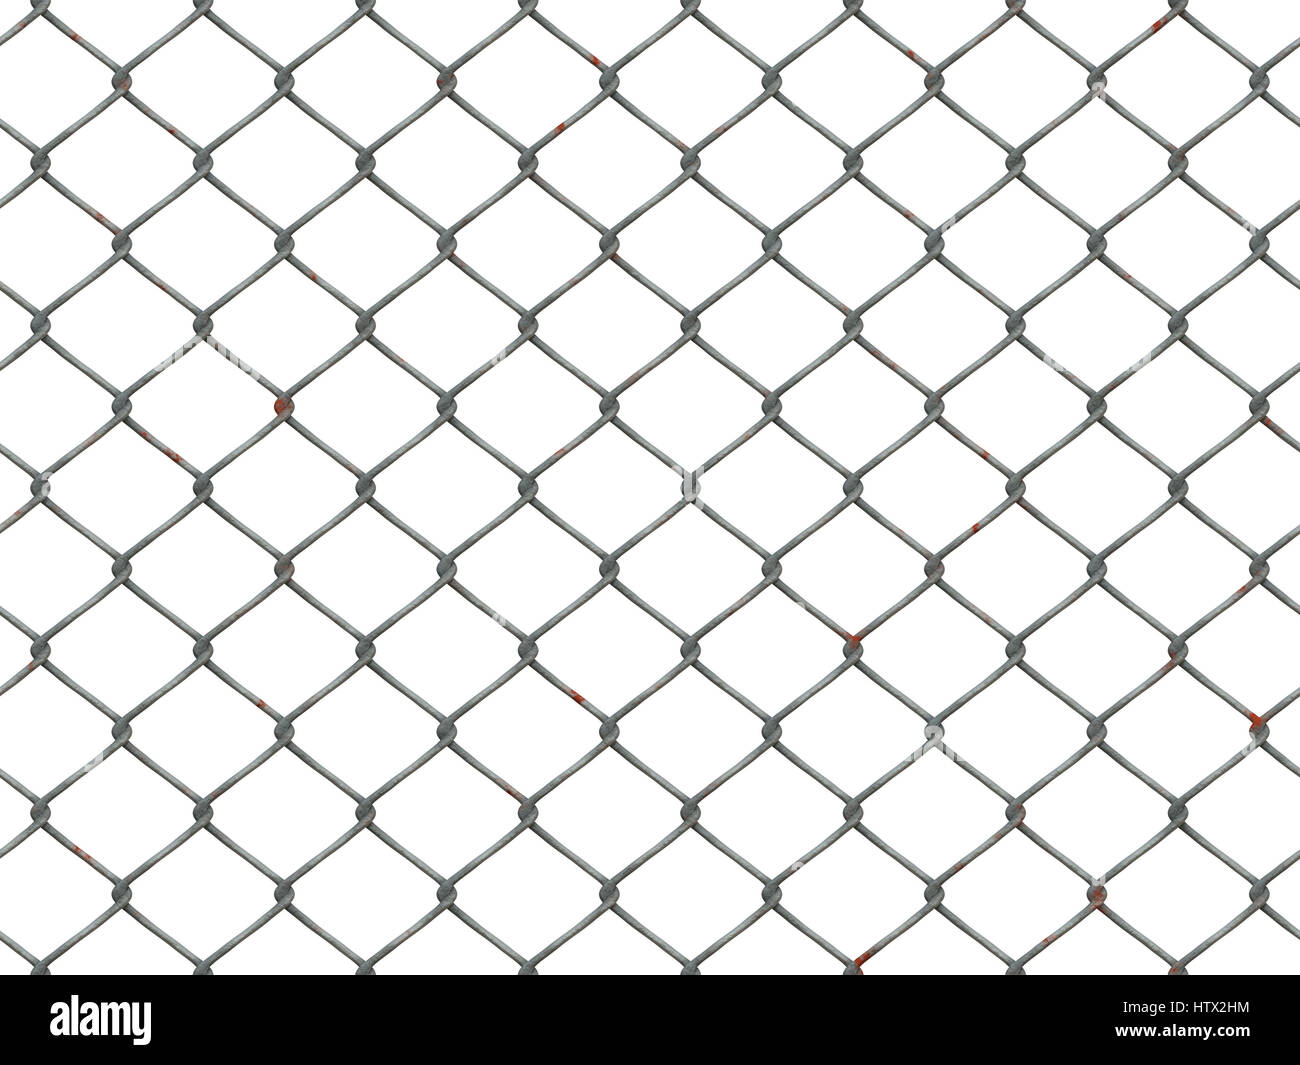 ik zal sterk zijn Gelijkmatig oorsprong Seamless texture metal mesh fence hi-res stock photography and images -  Alamy